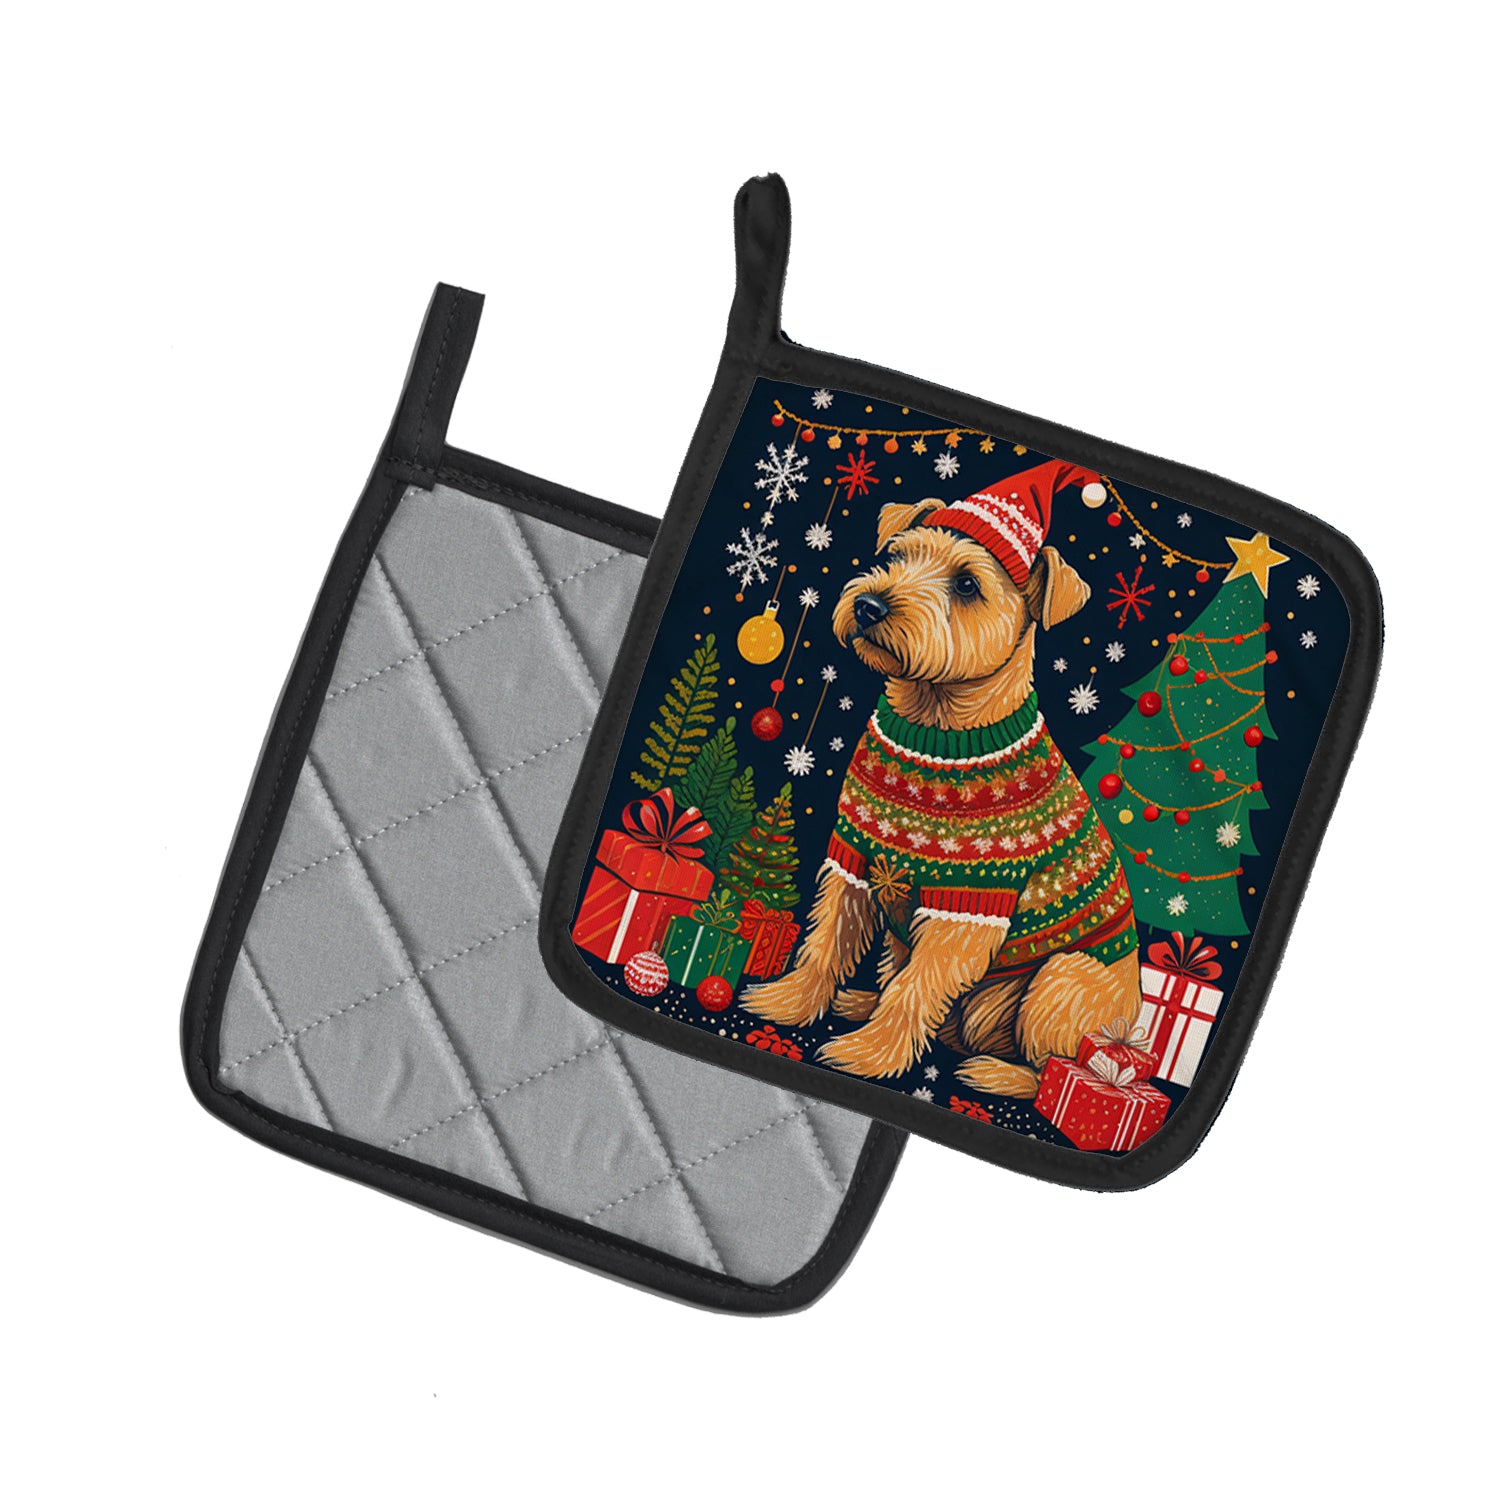 Buy this Lakeland Terrier Christmas Pair of Pot Holders